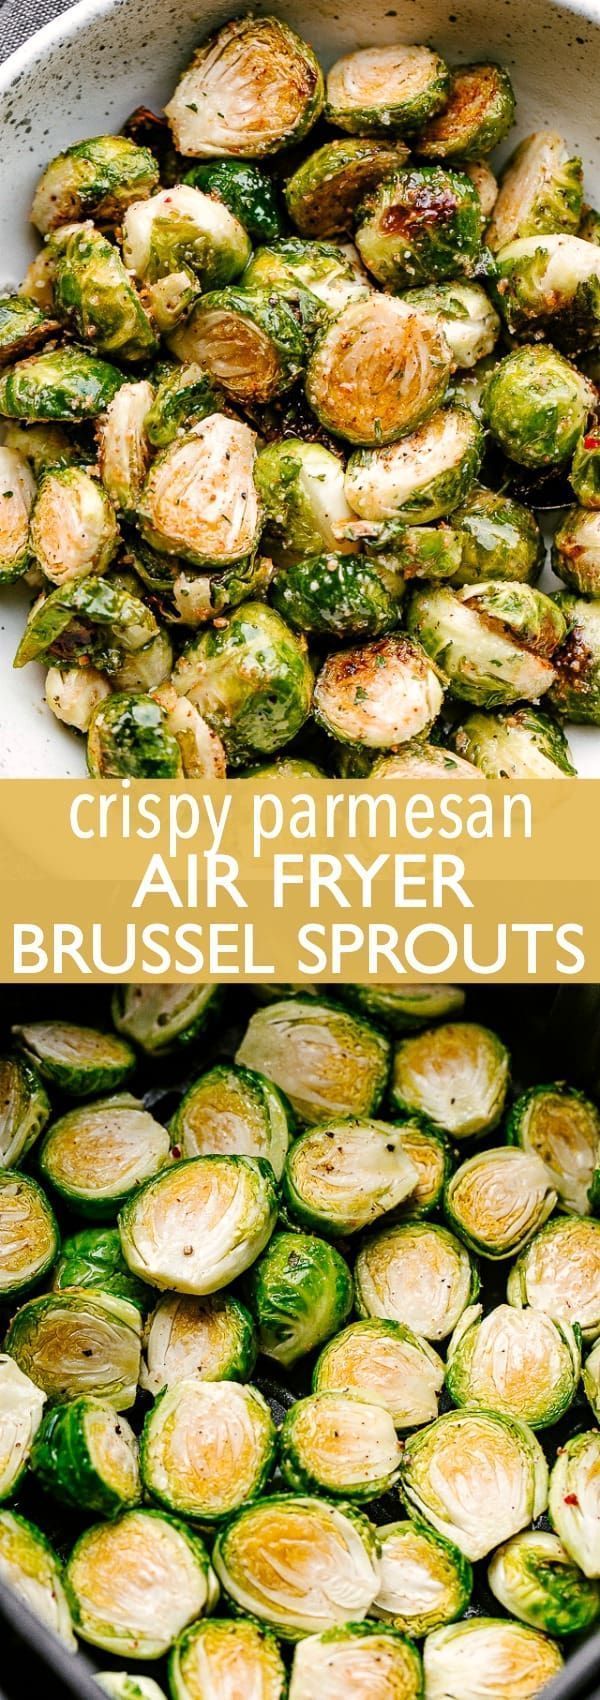 Crispy Parmesan Air Fryer Brussel Sprouts -   19 air fryer recipes healthy low calorie ideas